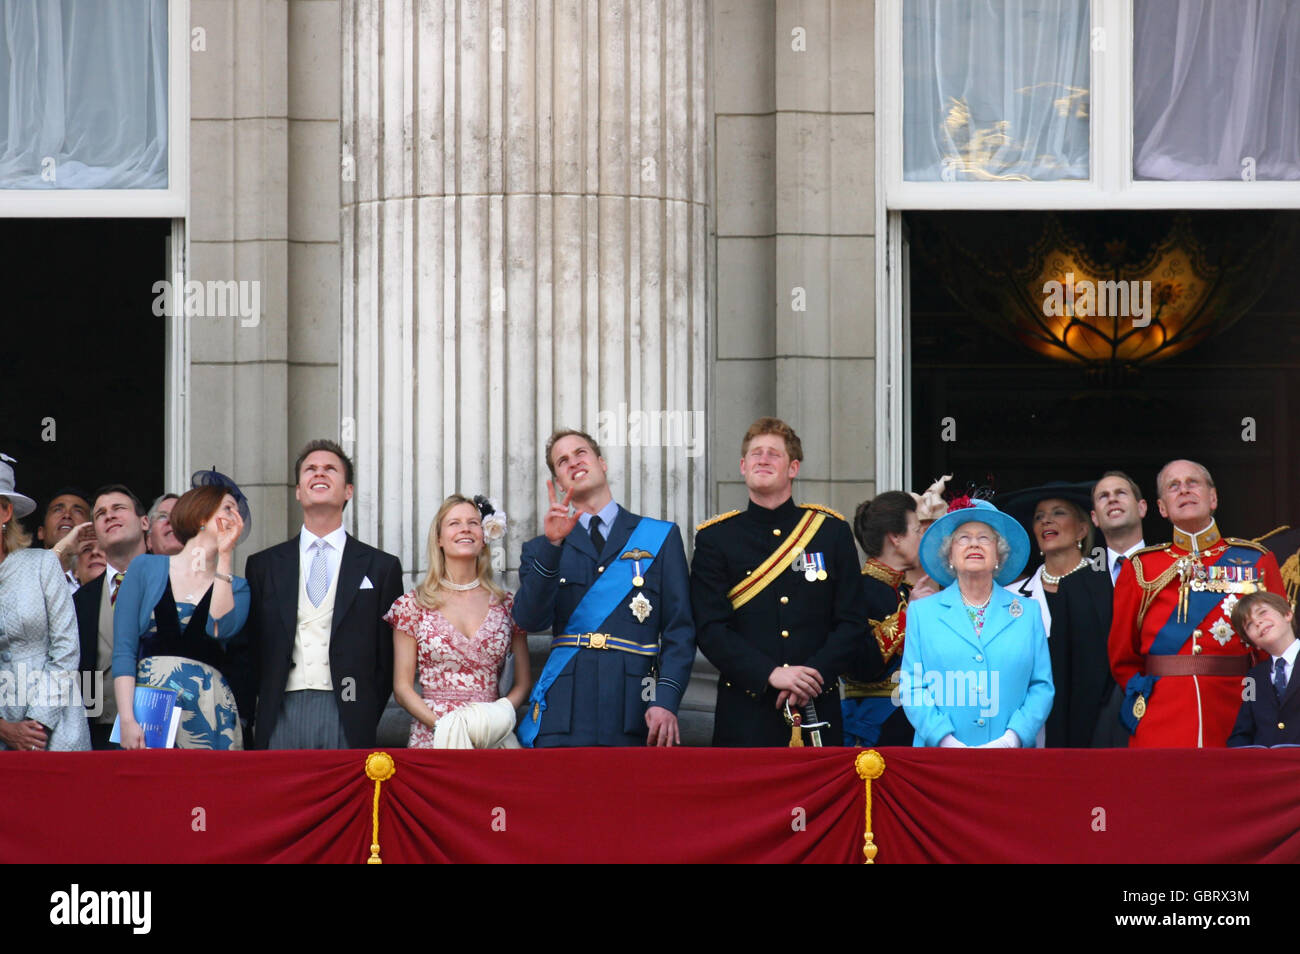 Da sinistra a destra, il Principe William, il Principe Harry, la Principessa reale, la Regina Elisabetta II, il Conte di Wessex e il Duca di Edimburgo guardano un volo dal balcone di Buckingham Palace a Londra alla conclusione dell'annuale Trooping the Color. Foto Stock